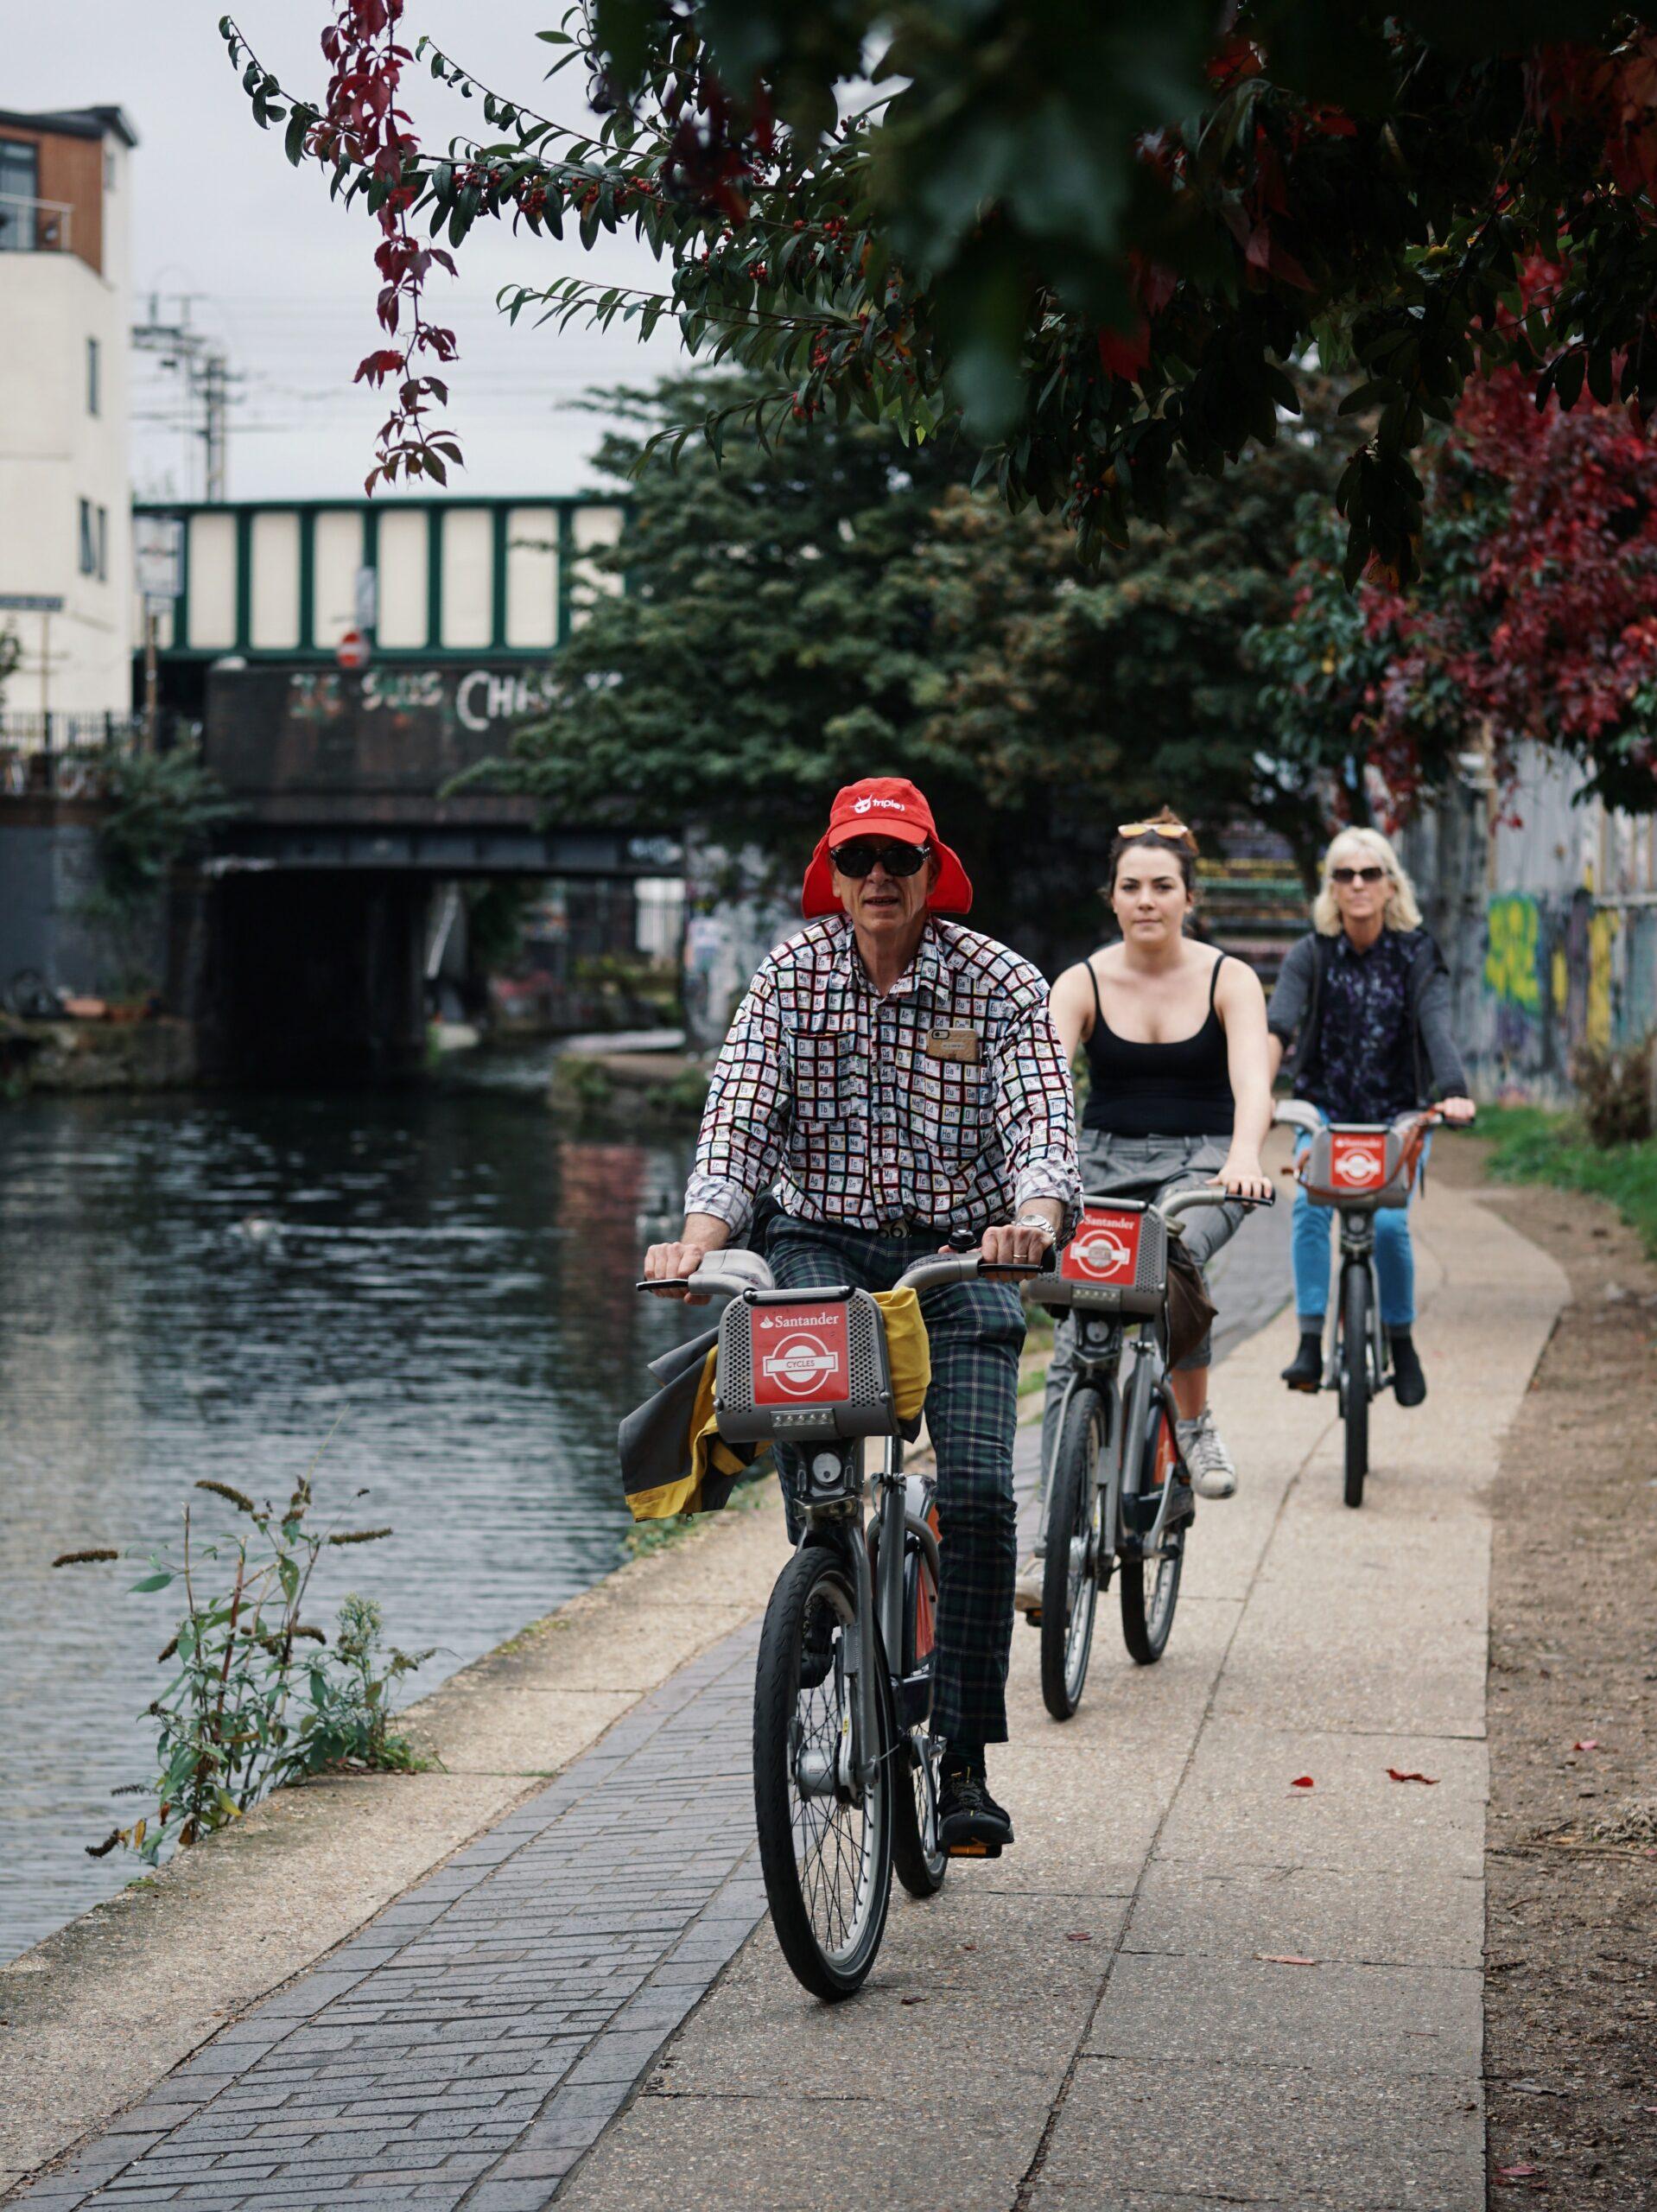 Es sind 3 Menschen auf Fahrrädern zu sehen die eine Fahrradtour entlang eines Kanals machen.